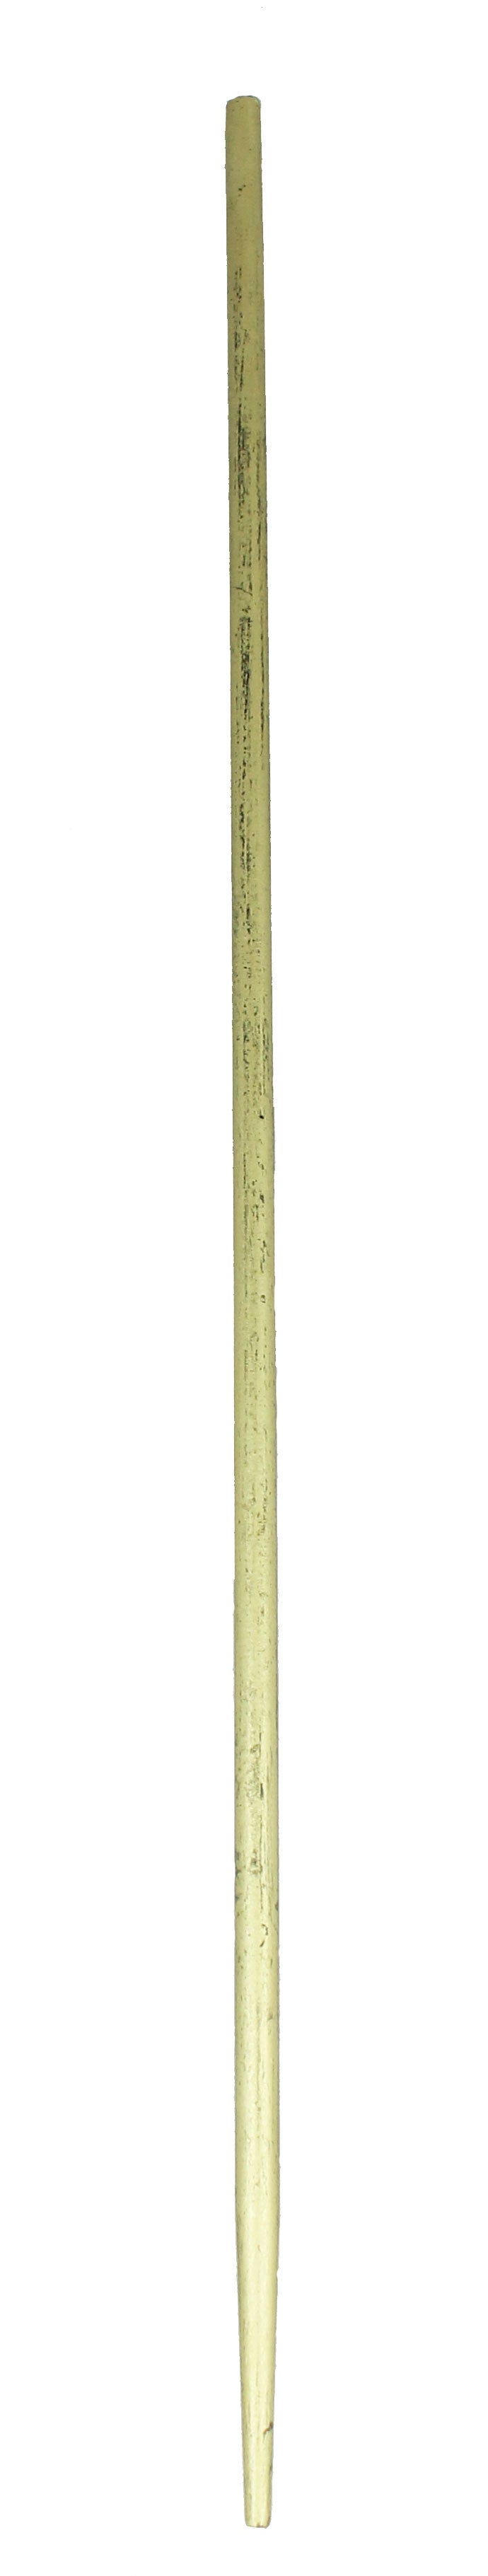 Gartenstecker Engel aus Metall Dekofigur Höhe 64 cm Farbe Gold Metallfigur Beetstecker Metall-Engel Weihnachtsdeko